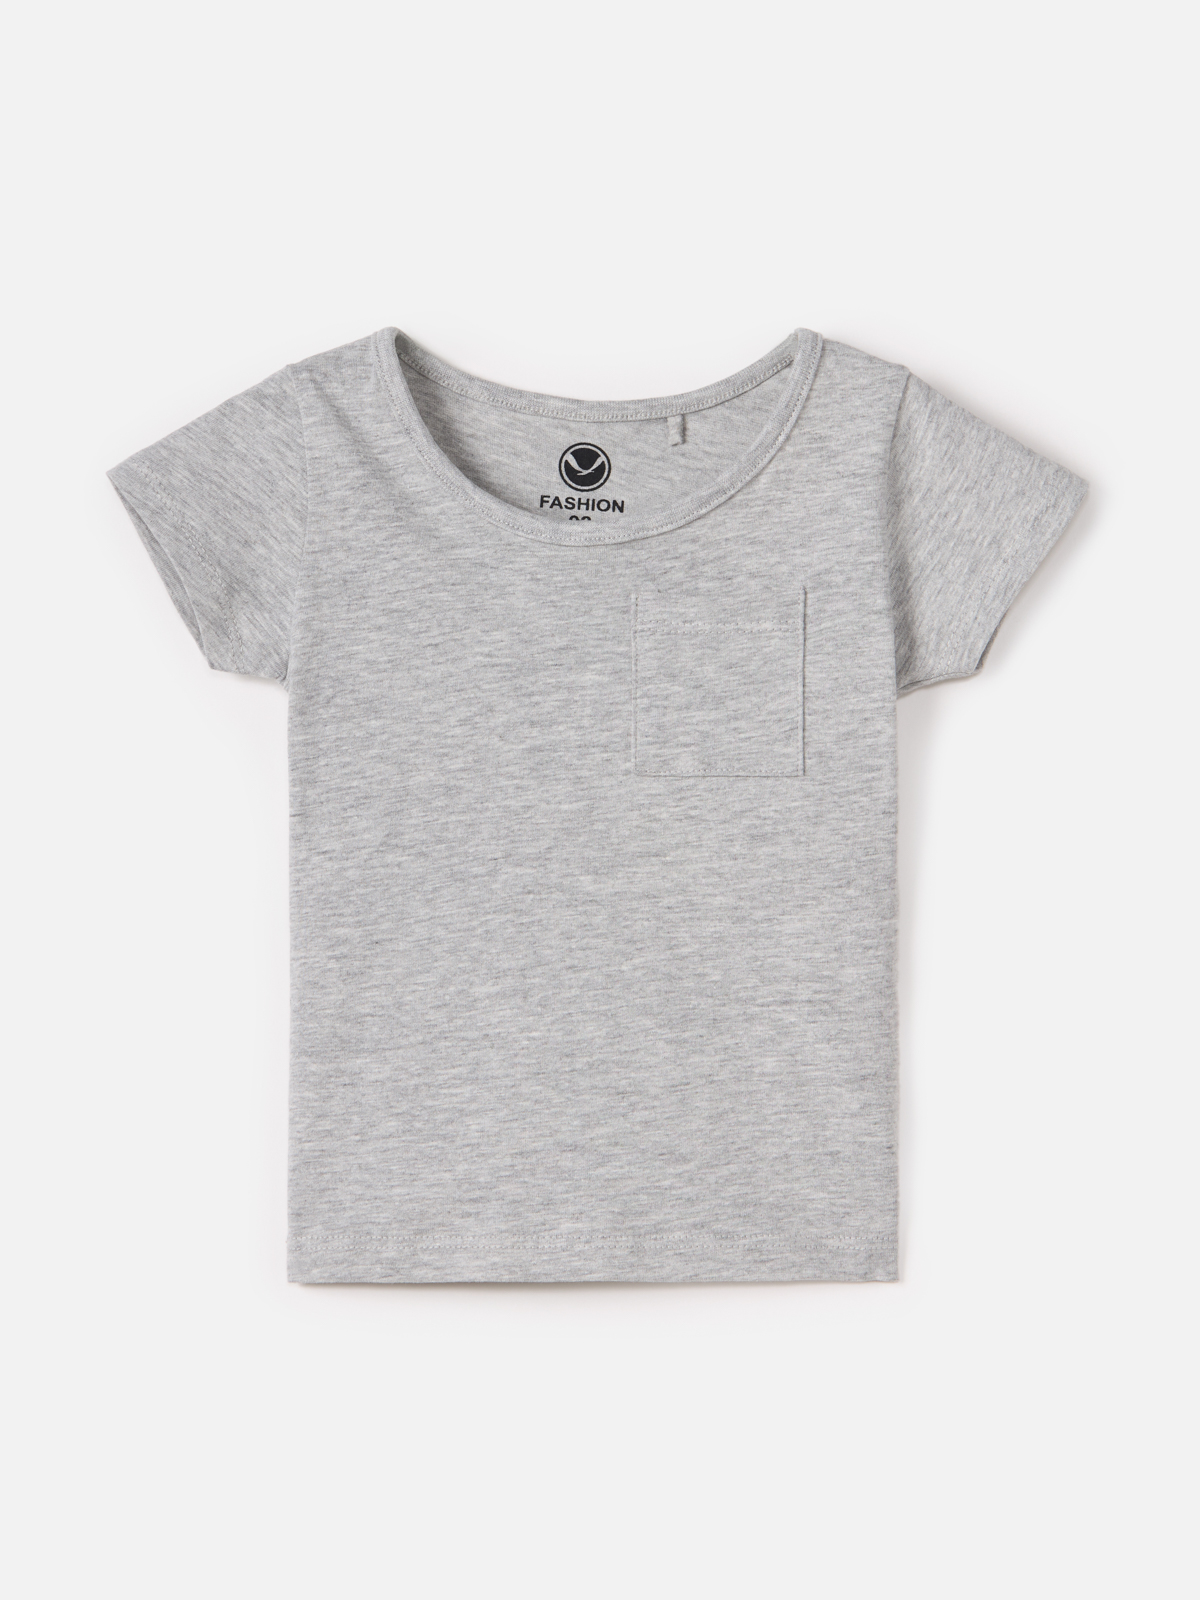 Футболка Harc Fashion для девочек, размер 134, HTC2306-004-light grey melange marmar copenhagen футболка ted grey melange